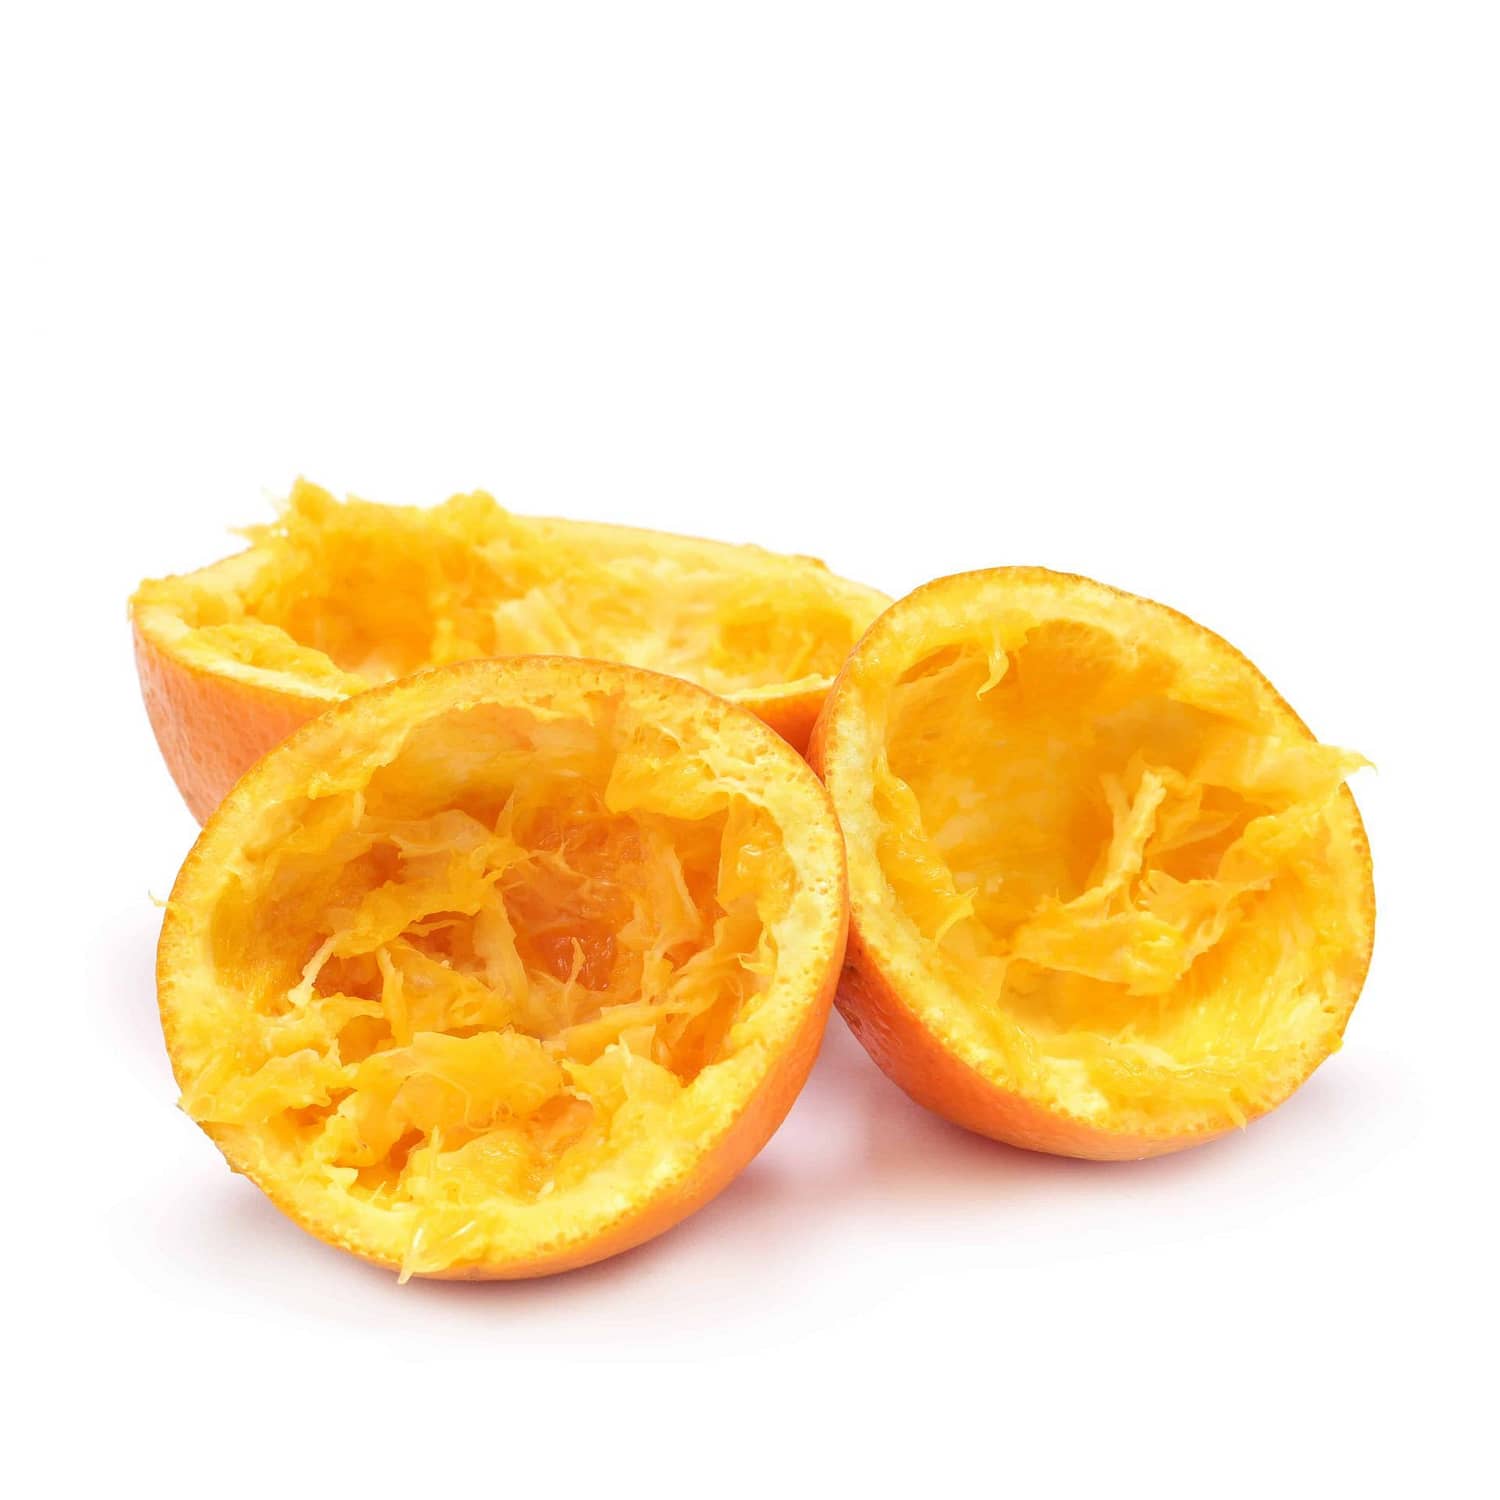 Squeezed oranges